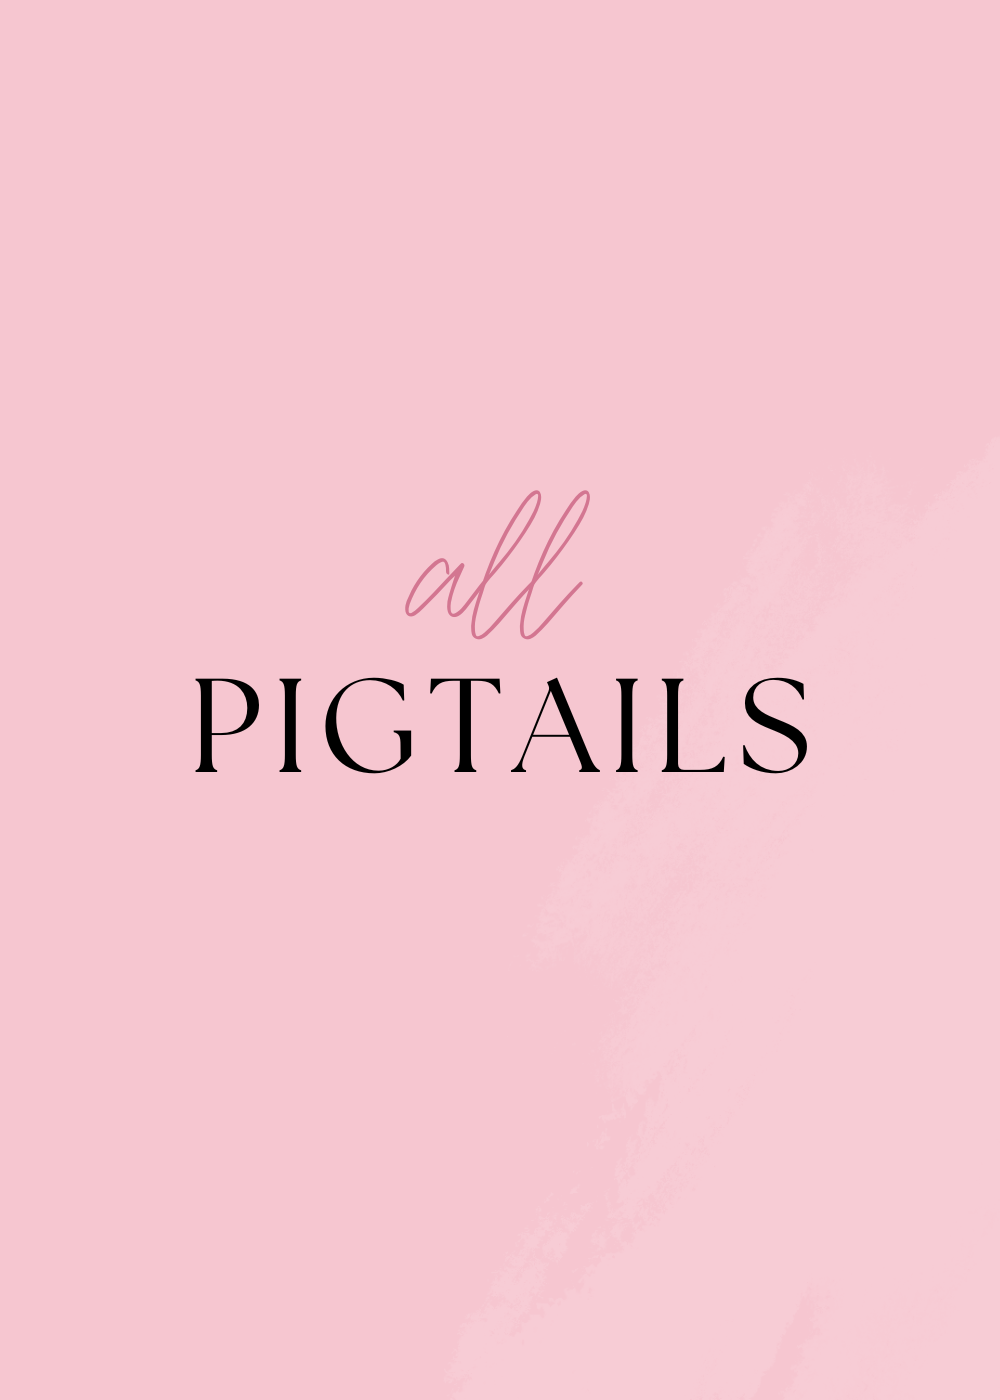 Pigtails